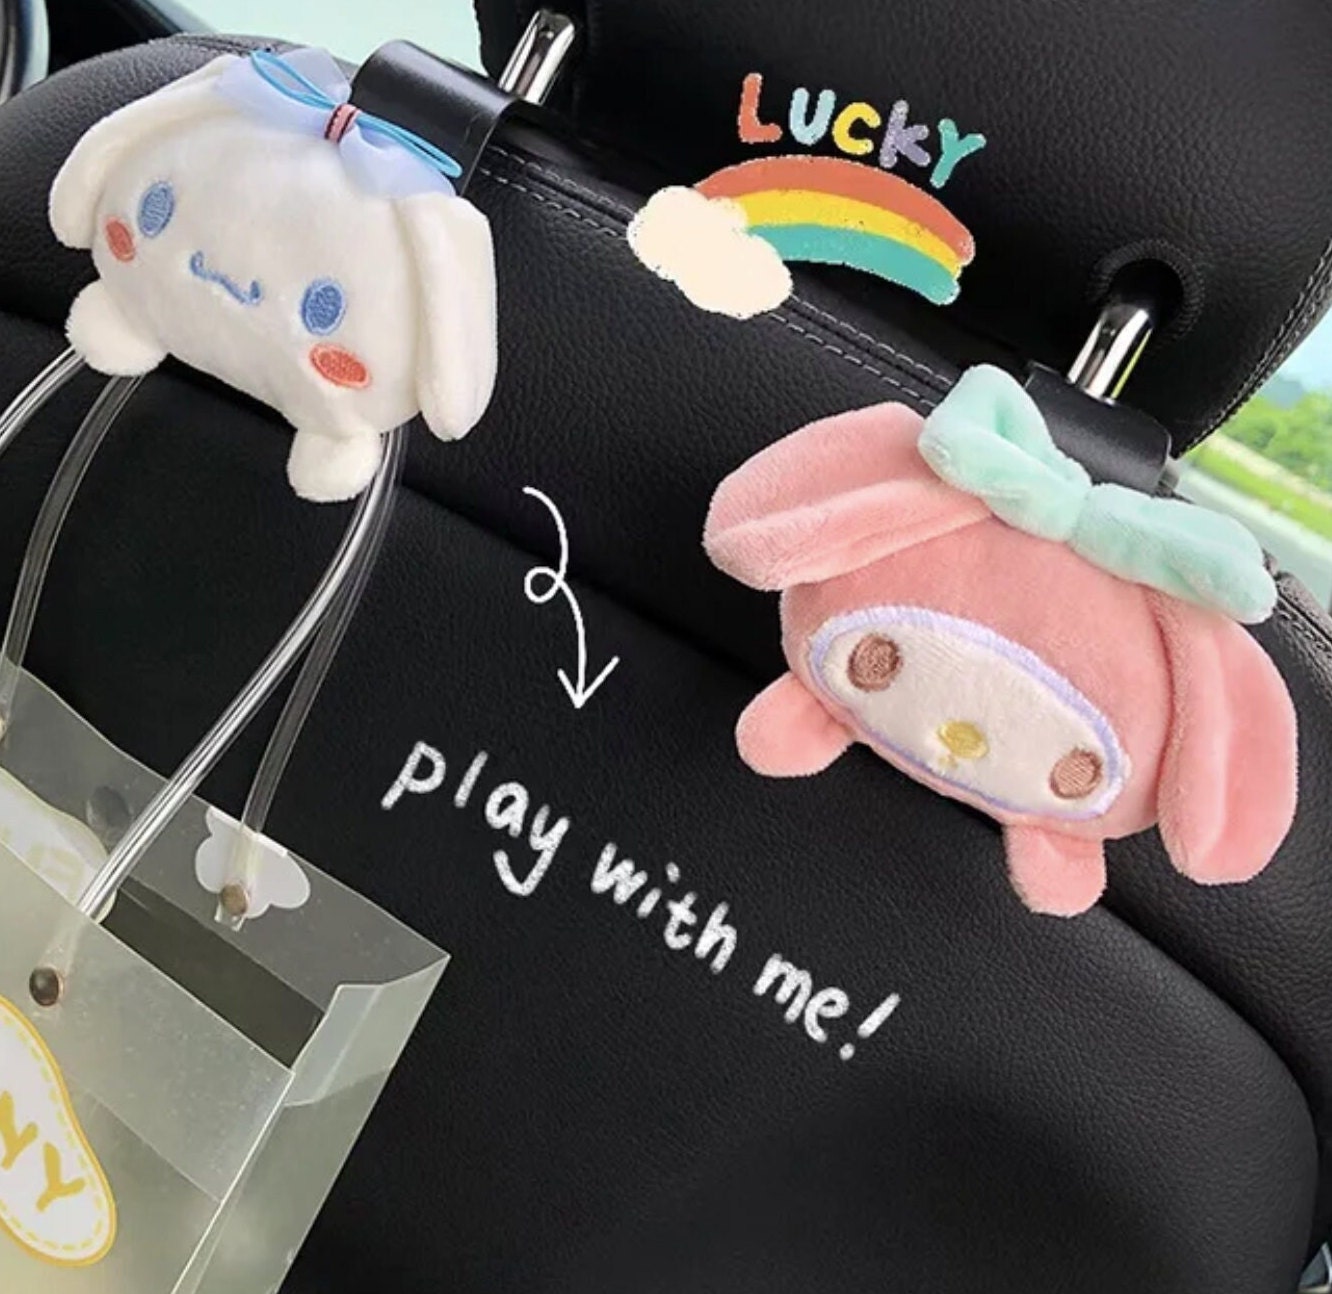 Sanrios Anime Cartoon HelloKittys Car Tissue Box Cute Kawaii Plush Doll  Creative Girl Car Accessories Hanging Tissue Bag Gift